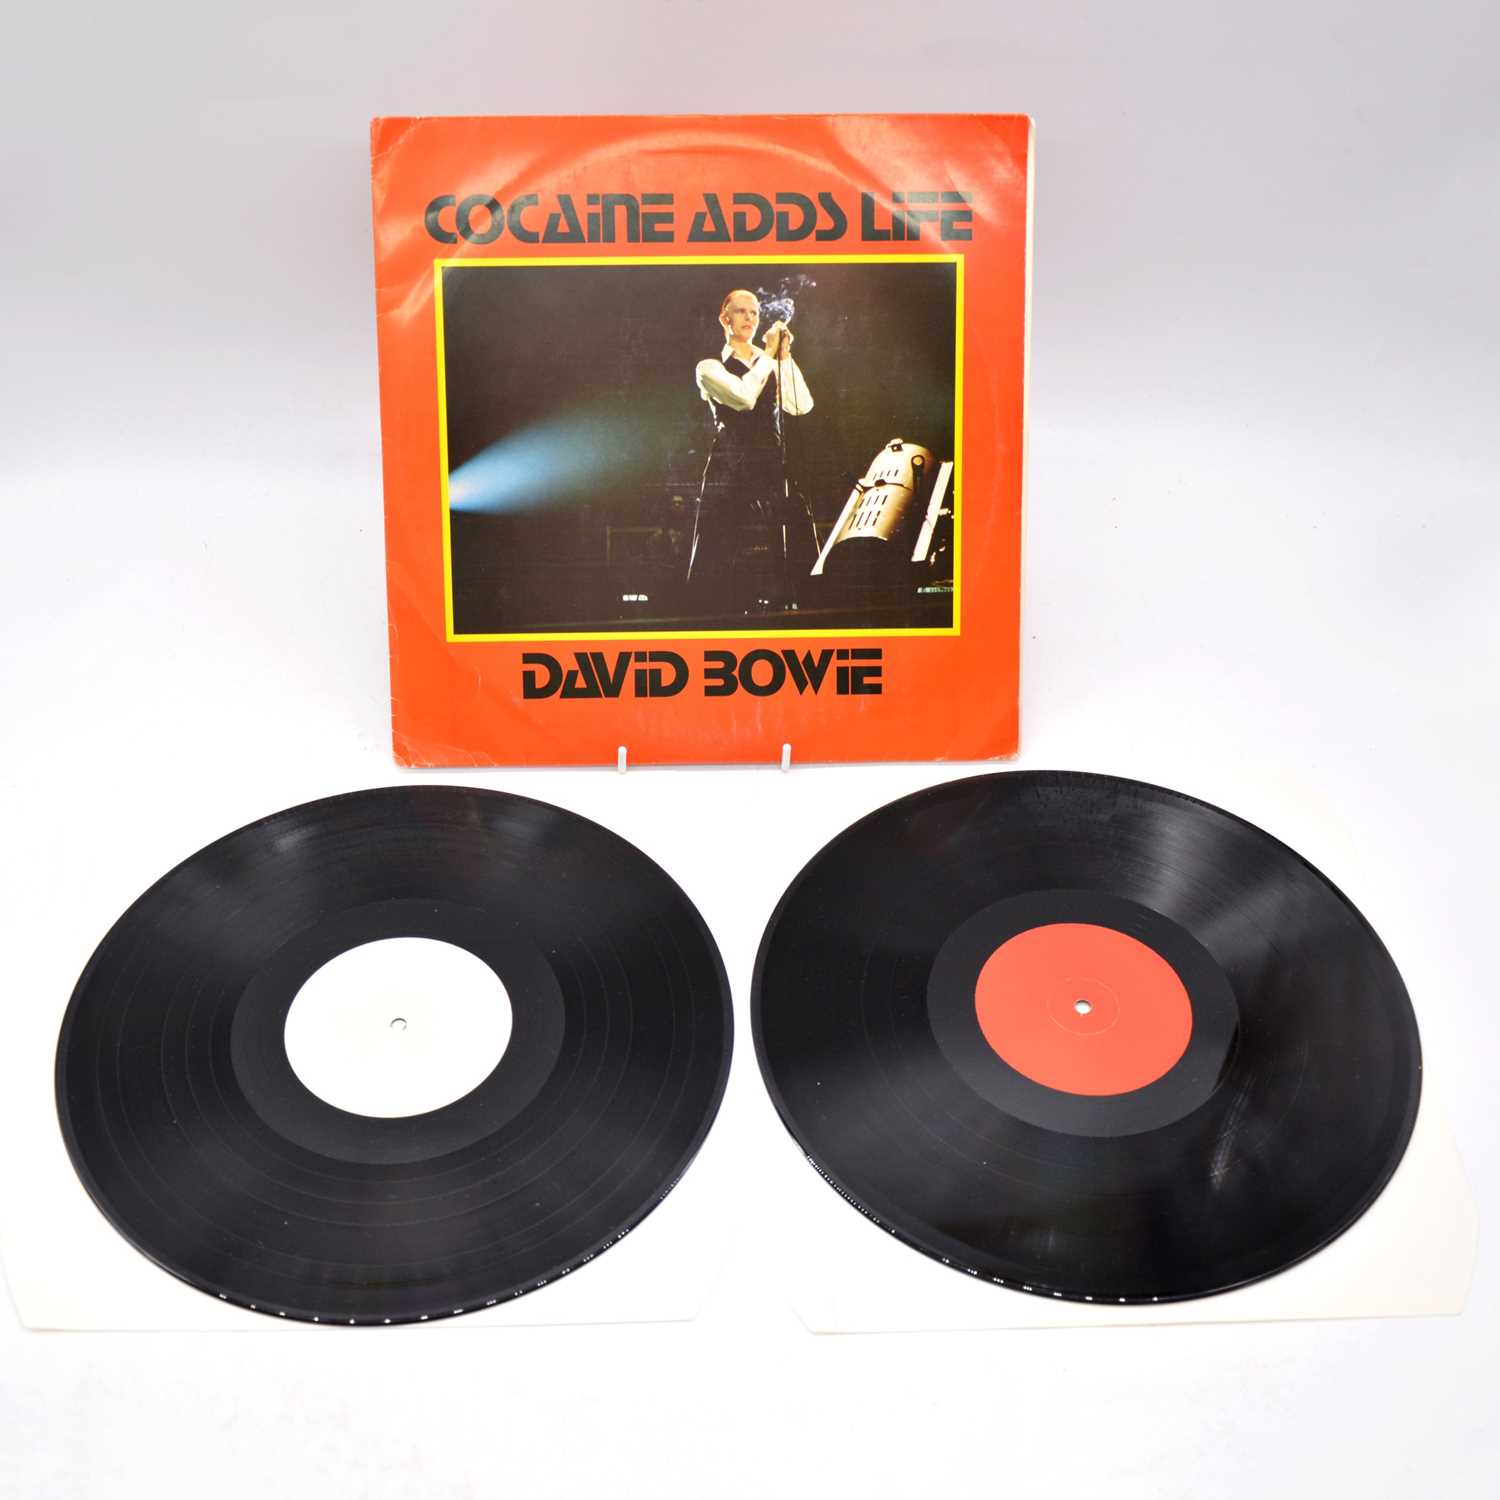 Lot 24 - David Bowie LP vinyl record, Cocaine Adds Life.